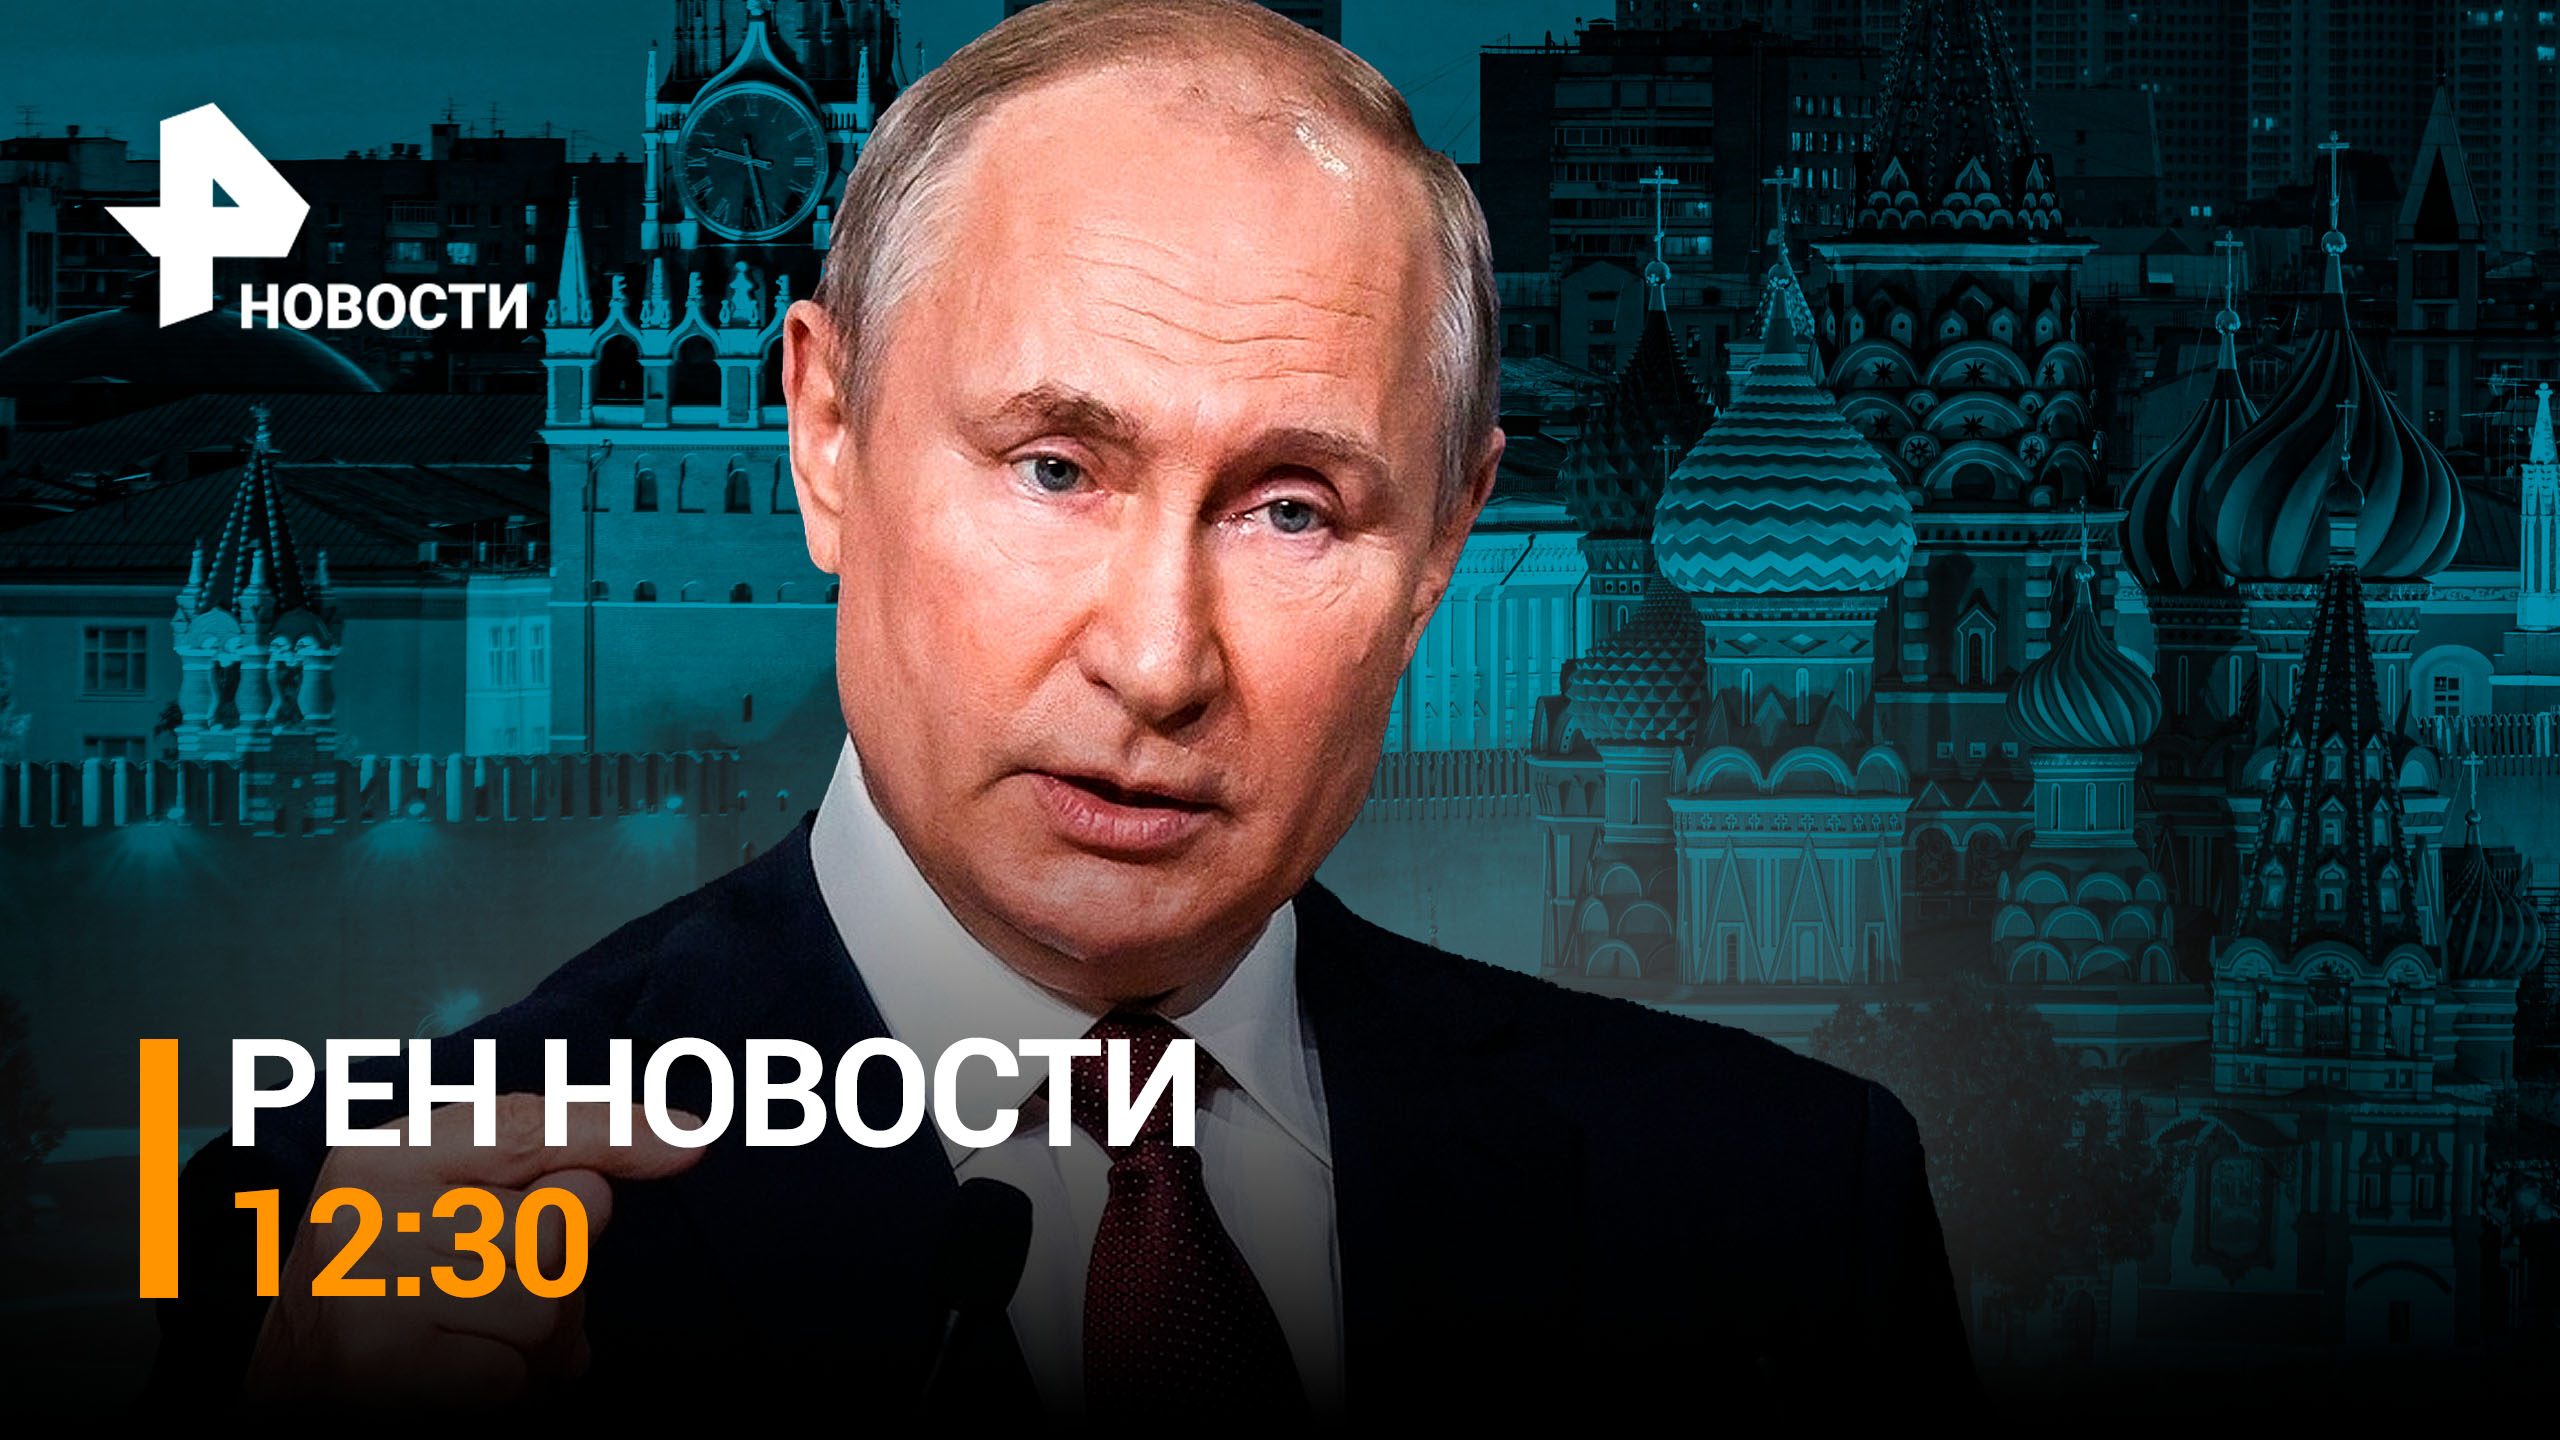 100 миллионов человек посмотрели интервью с Путиным. На Западе не оценили смену главы ВСУ / РЕН